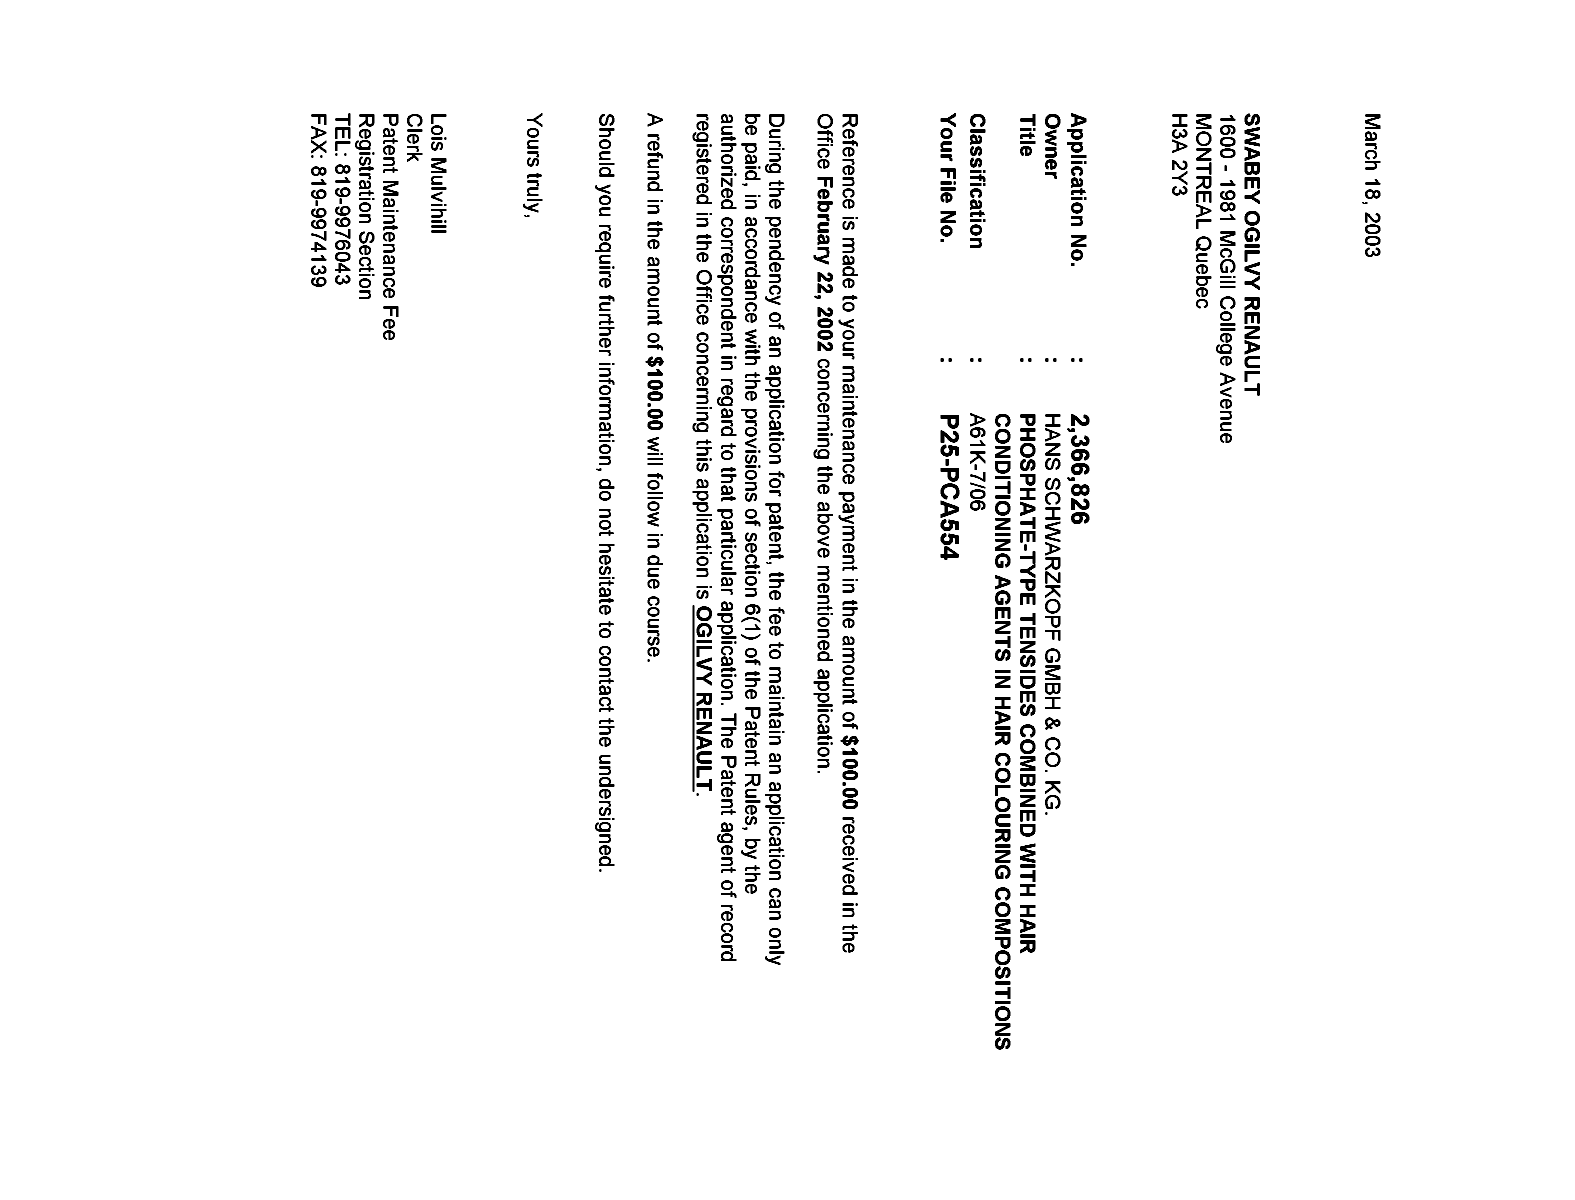 Document de brevet canadien 2366826. Correspondance 20021218. Image 1 de 1